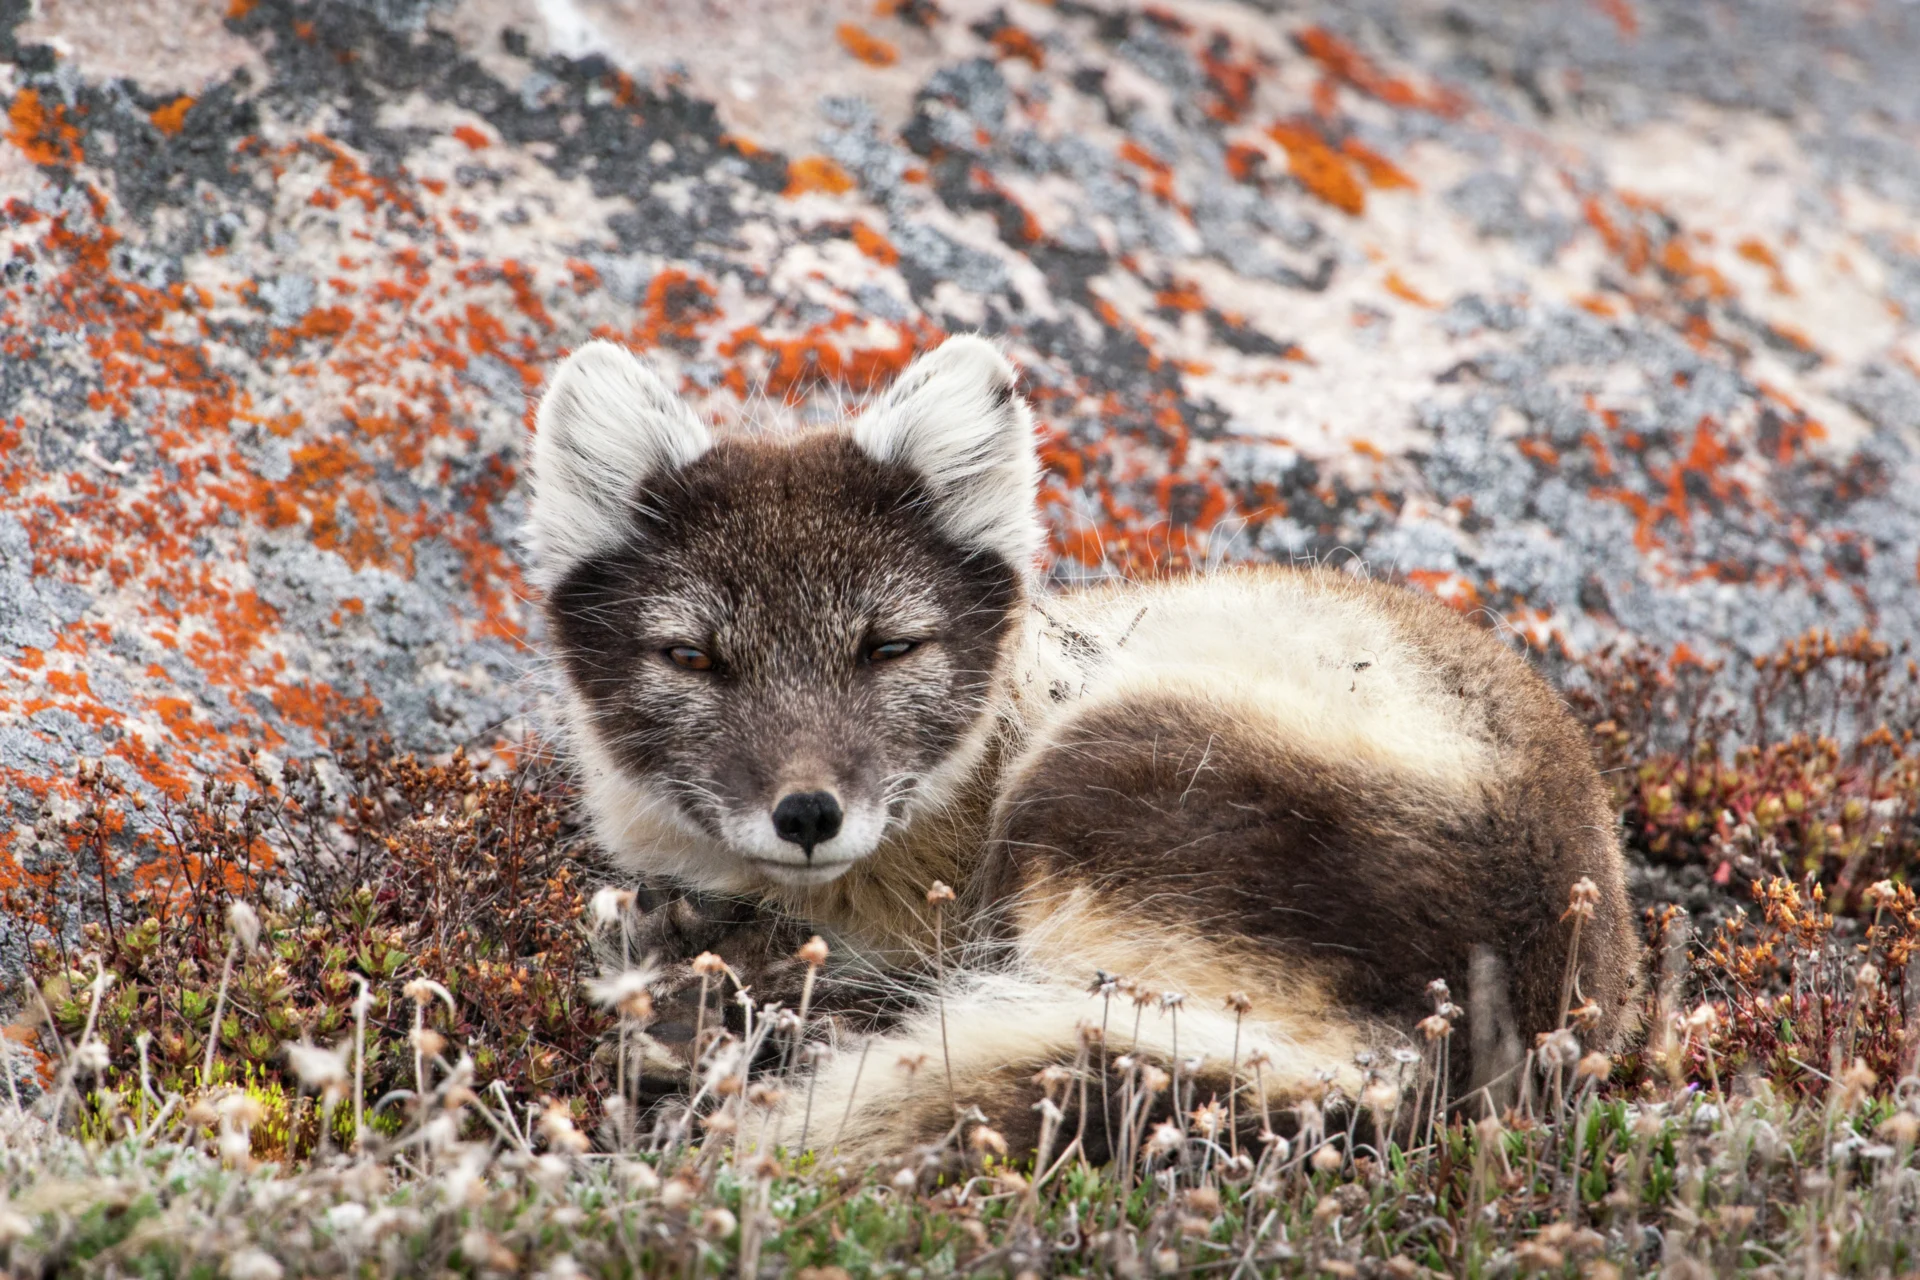 Wildlife in the Northwest Passage